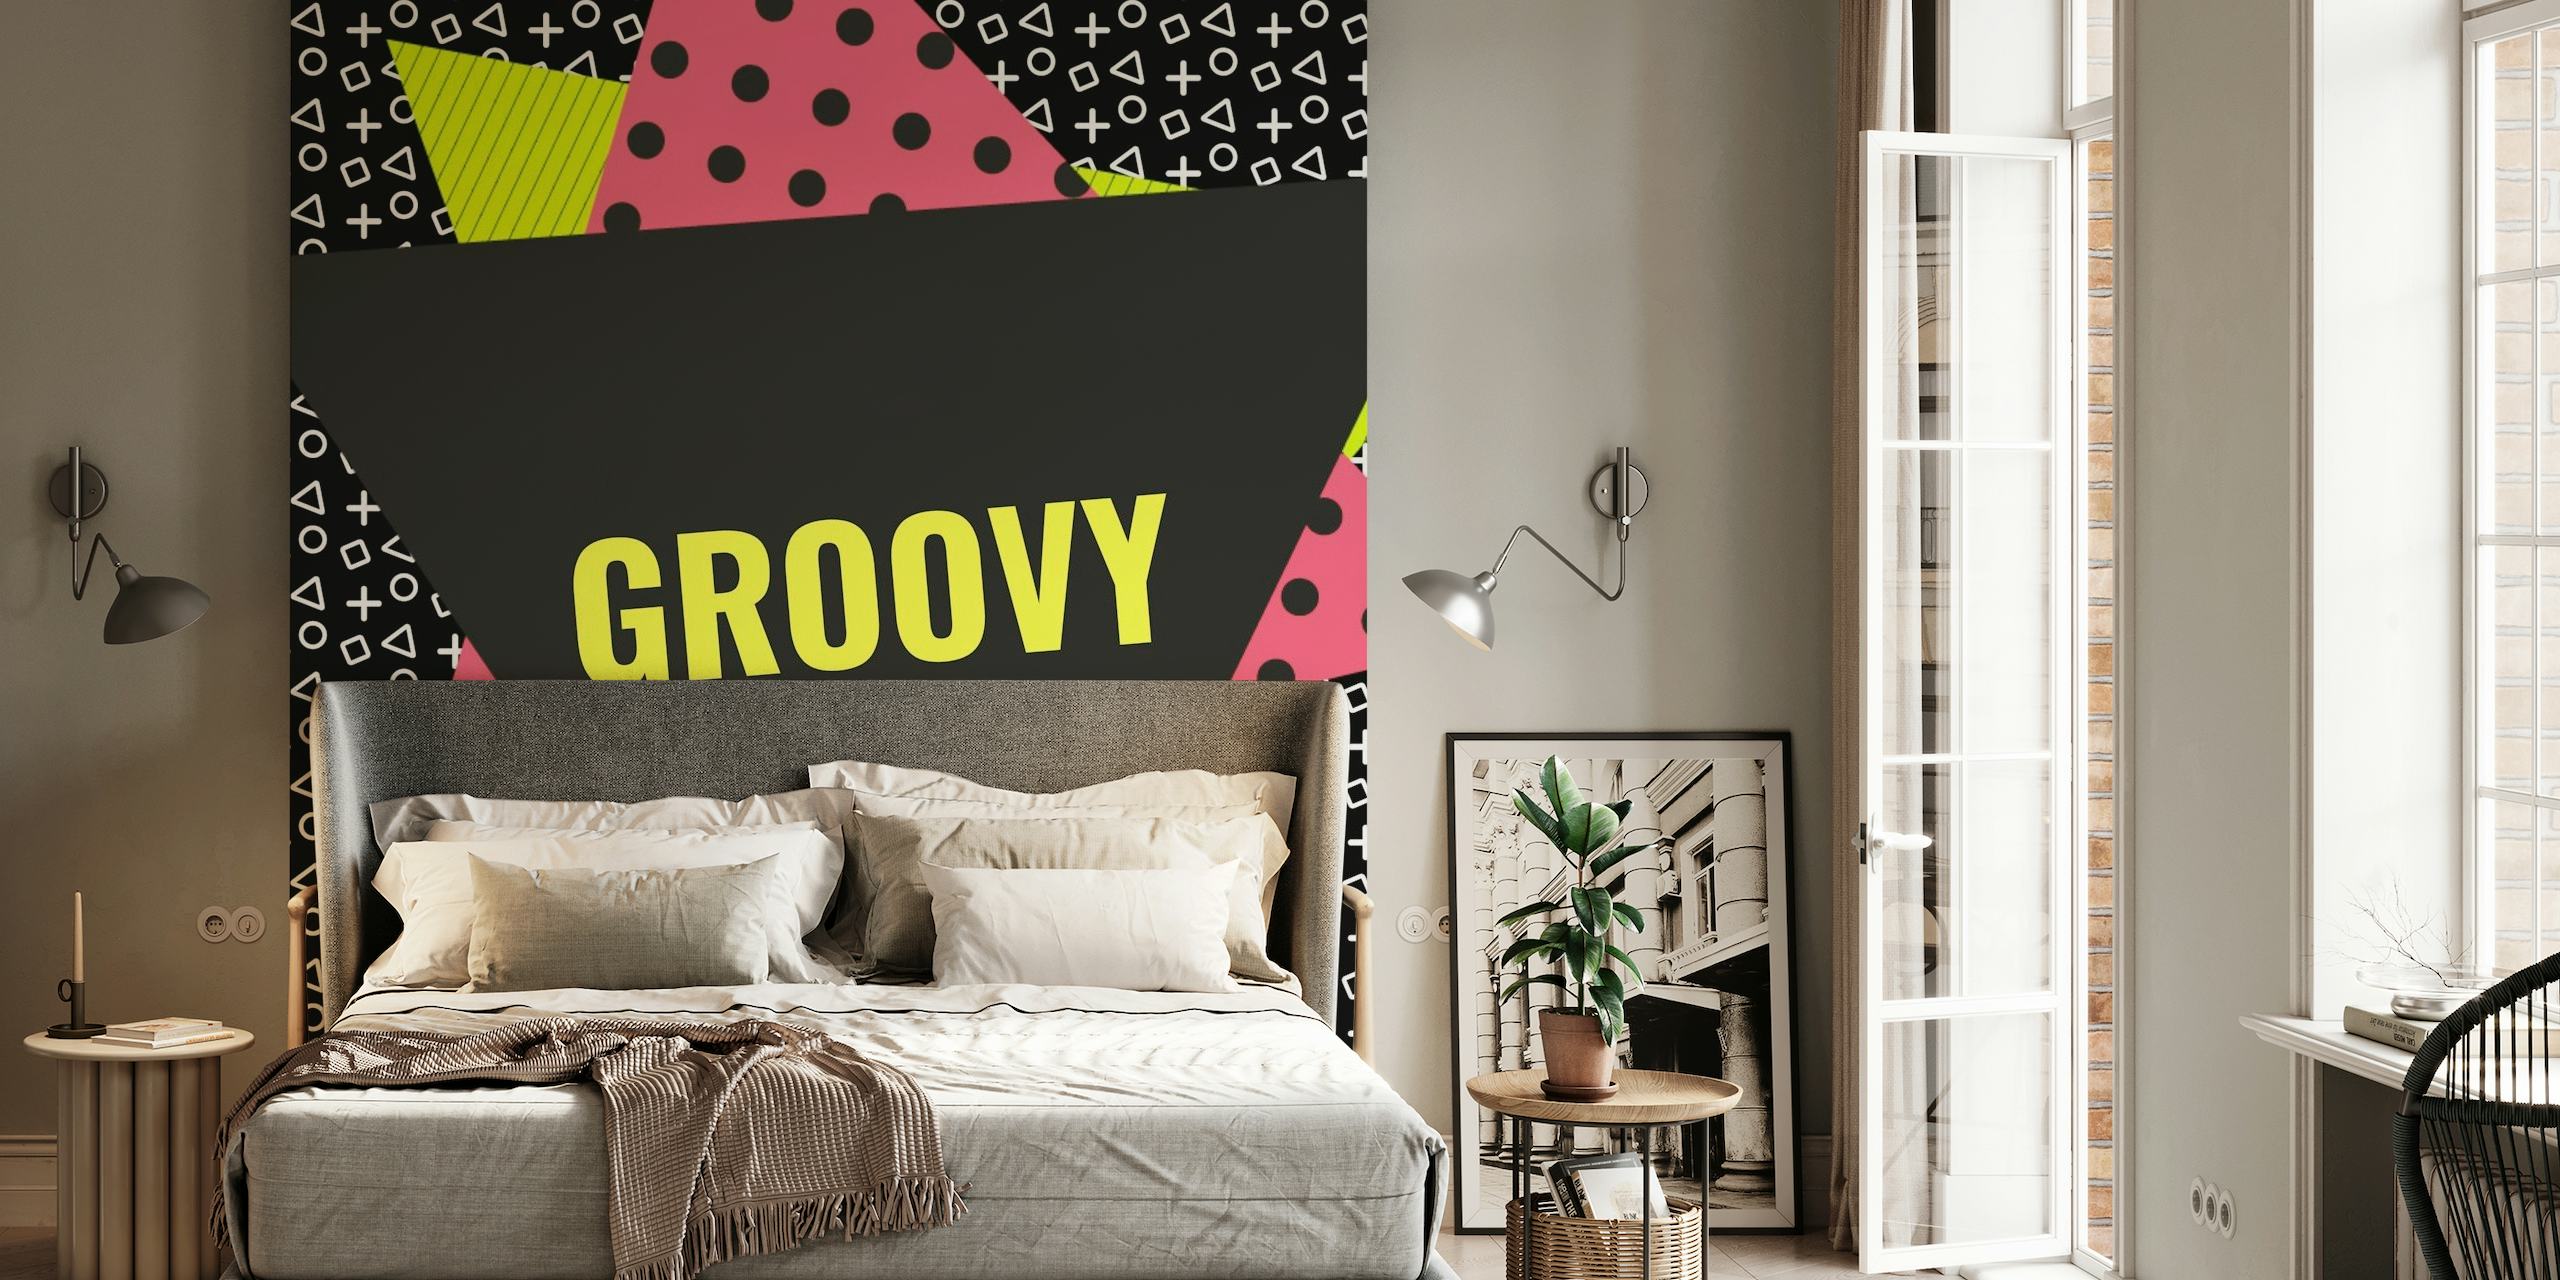 Memphis Style Geometrische muurschildering met 'Groovy' tekst, abstracte vormen en felle kleuren